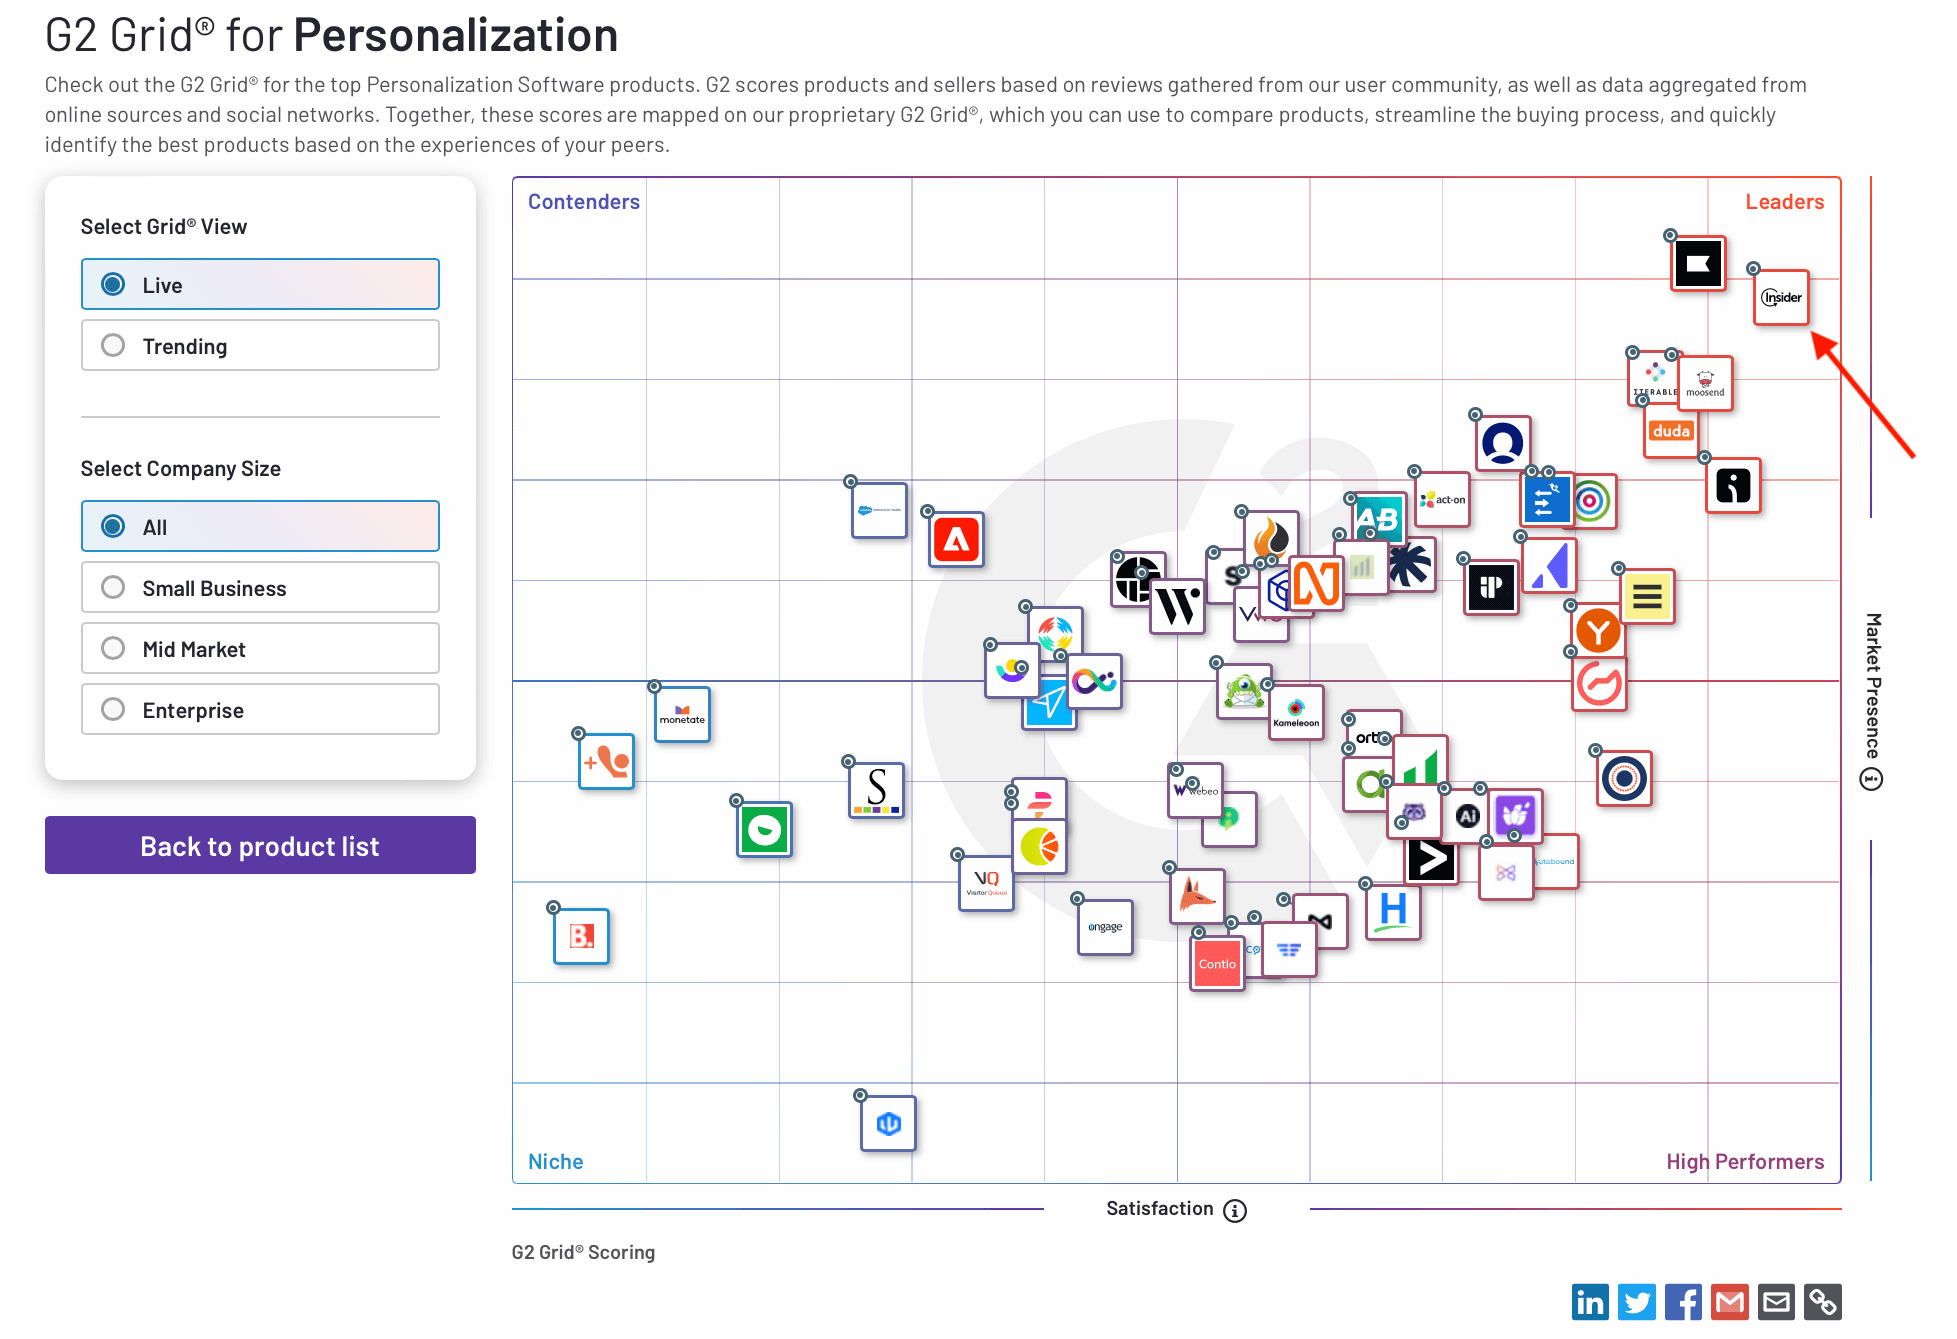 Grid de software de personalização da G2